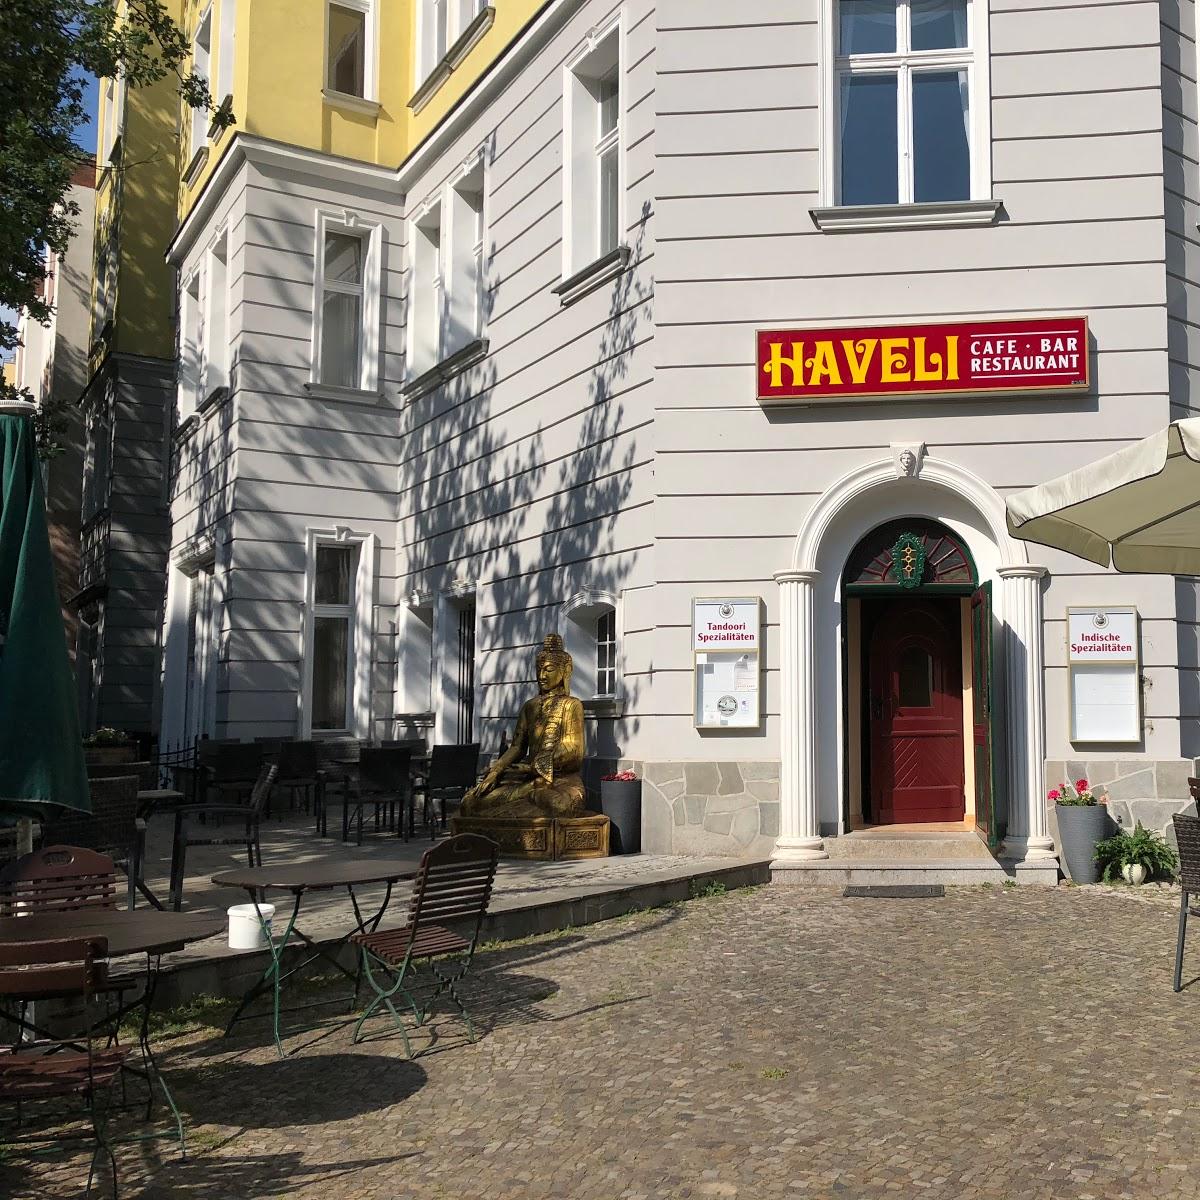 Restaurant "Haveli" in Berlin